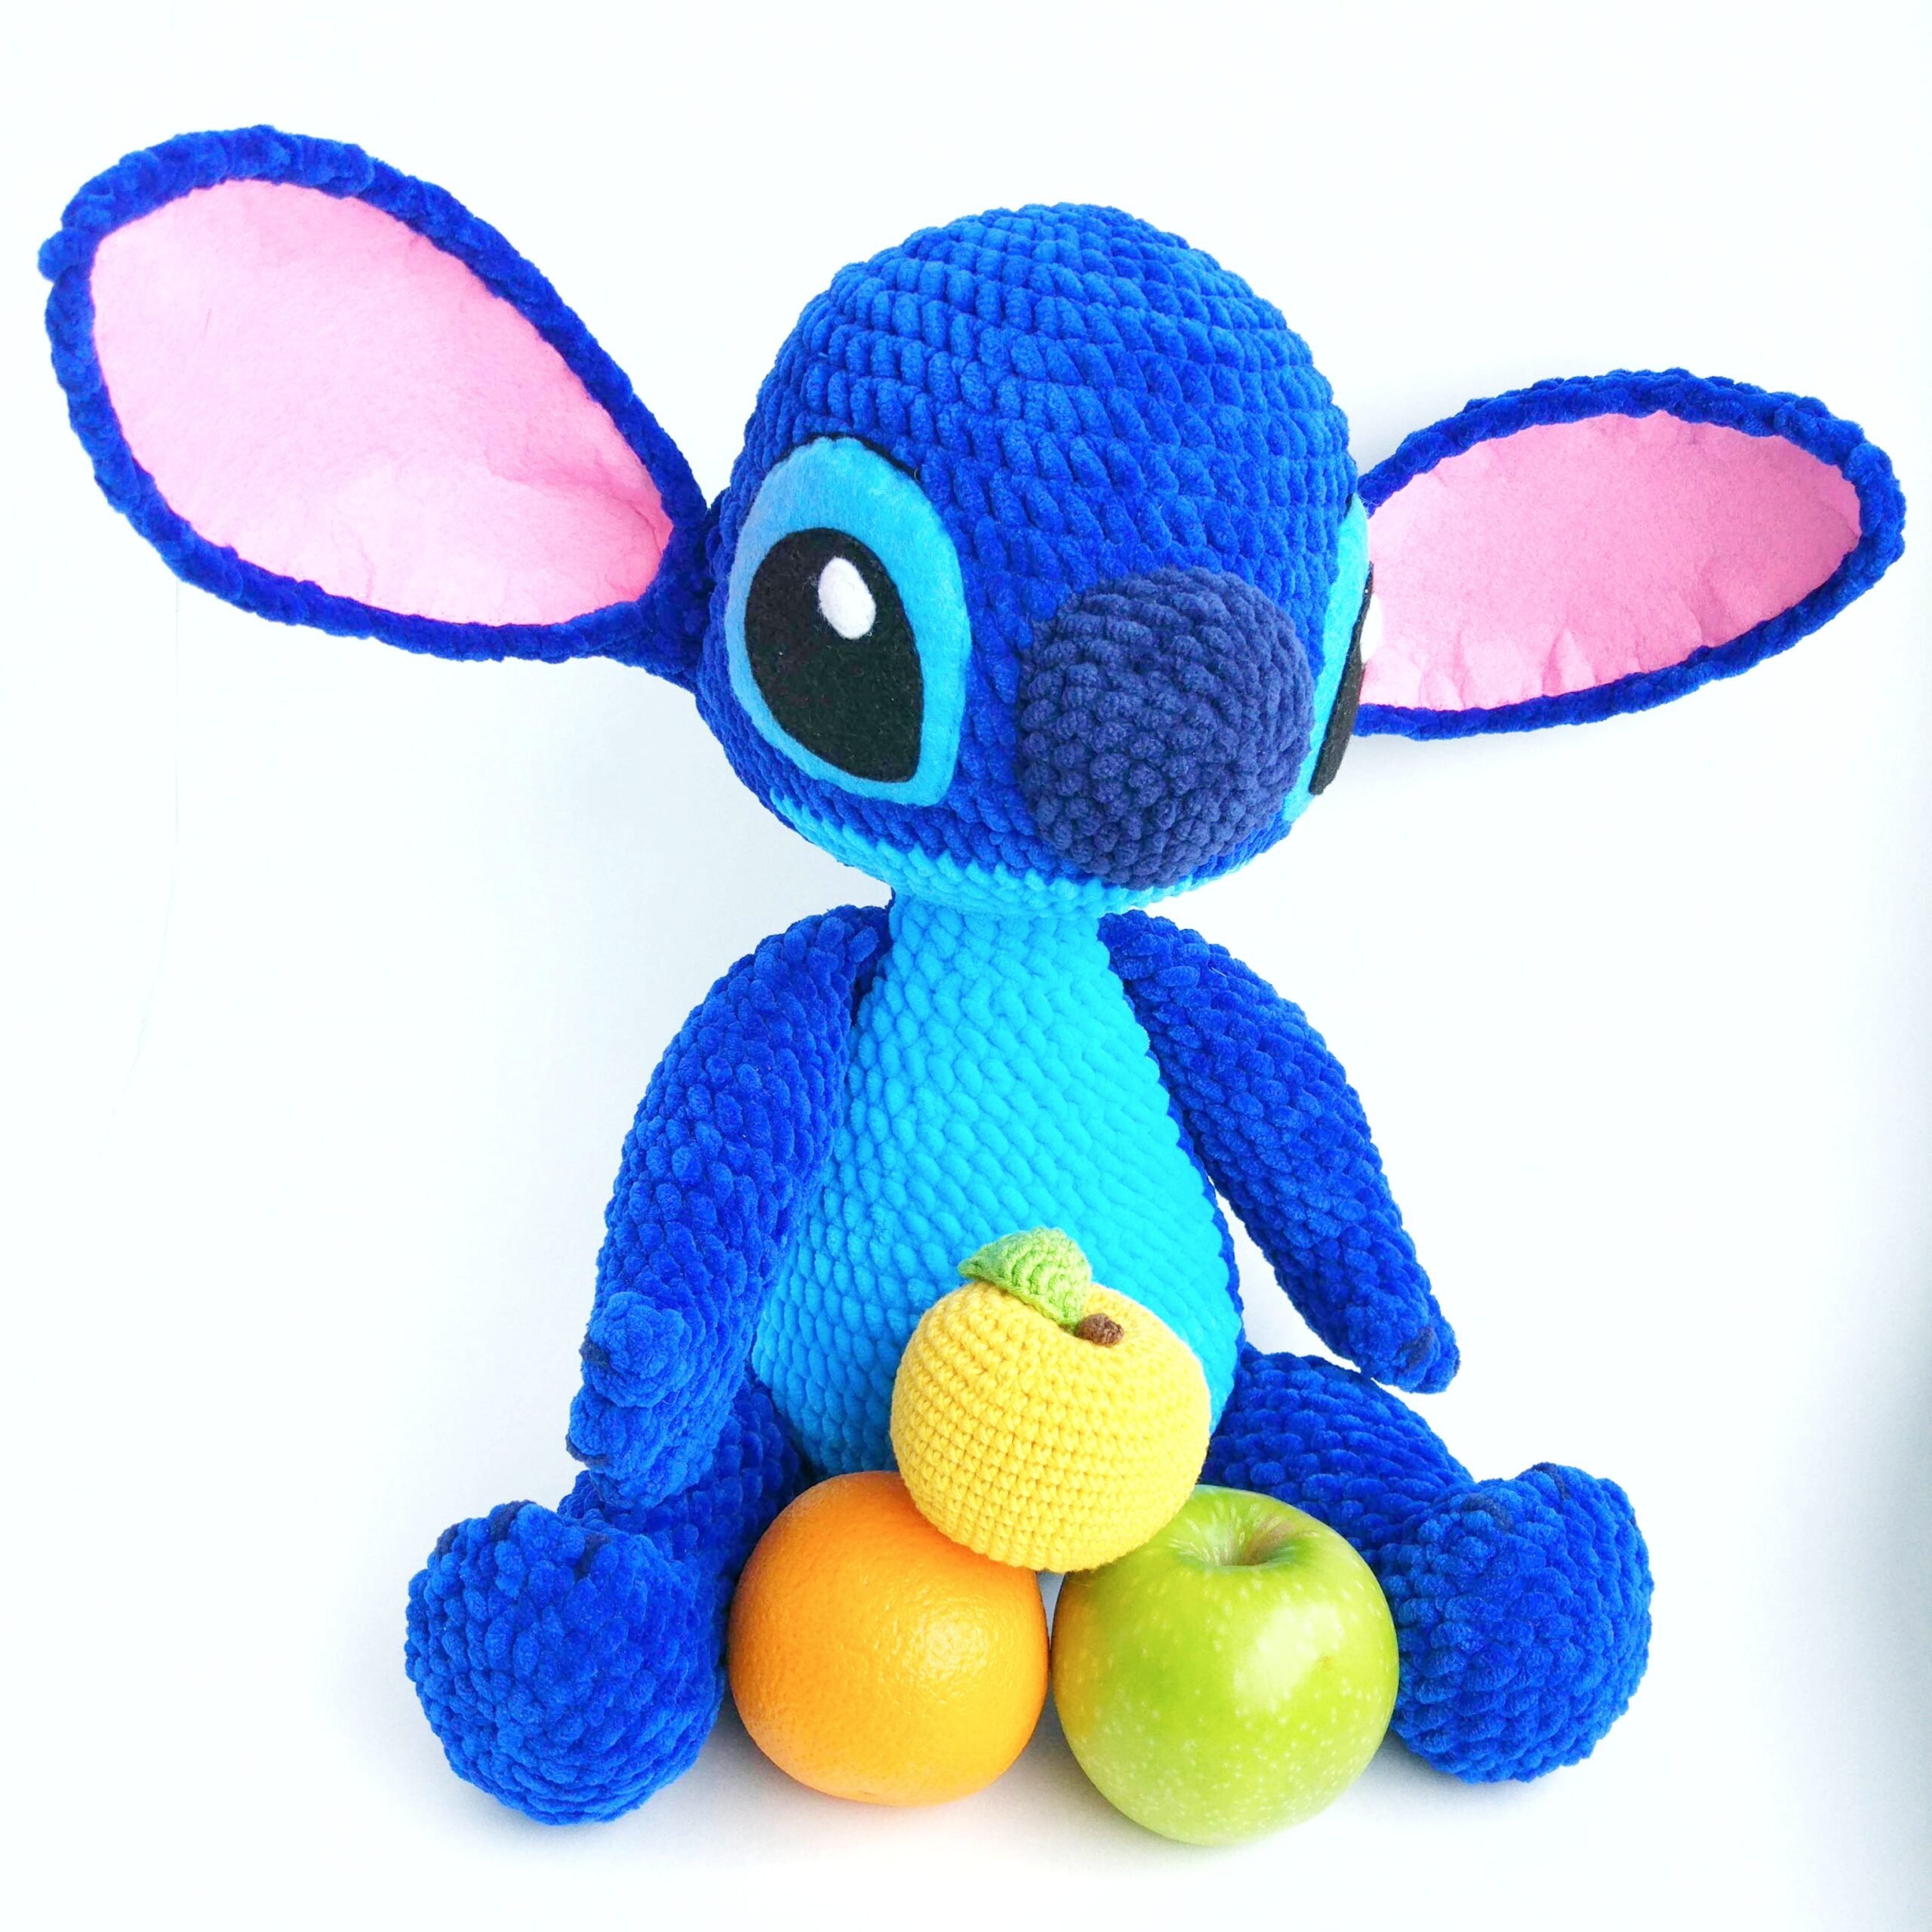 Crochet Plush Stitch toy pattern, amigurumi blue alien - DailyDoll